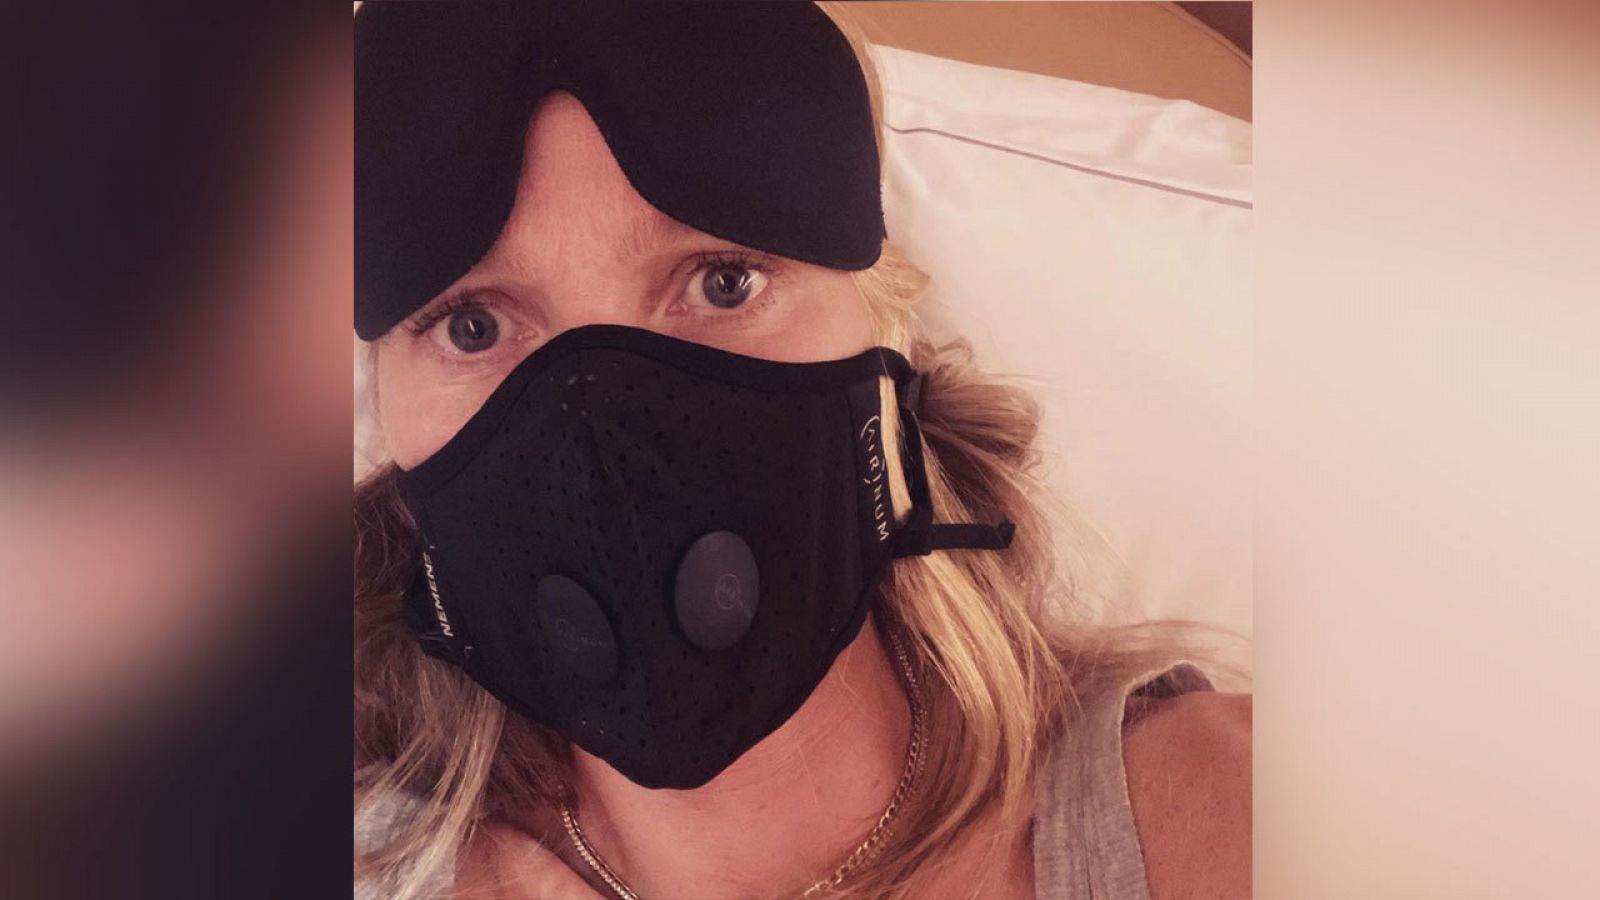  Gwyneth Paltrow  ha publicado una imagen en Instagram recordando la película "Contagio" a raíz de la expansión del Coronavirus